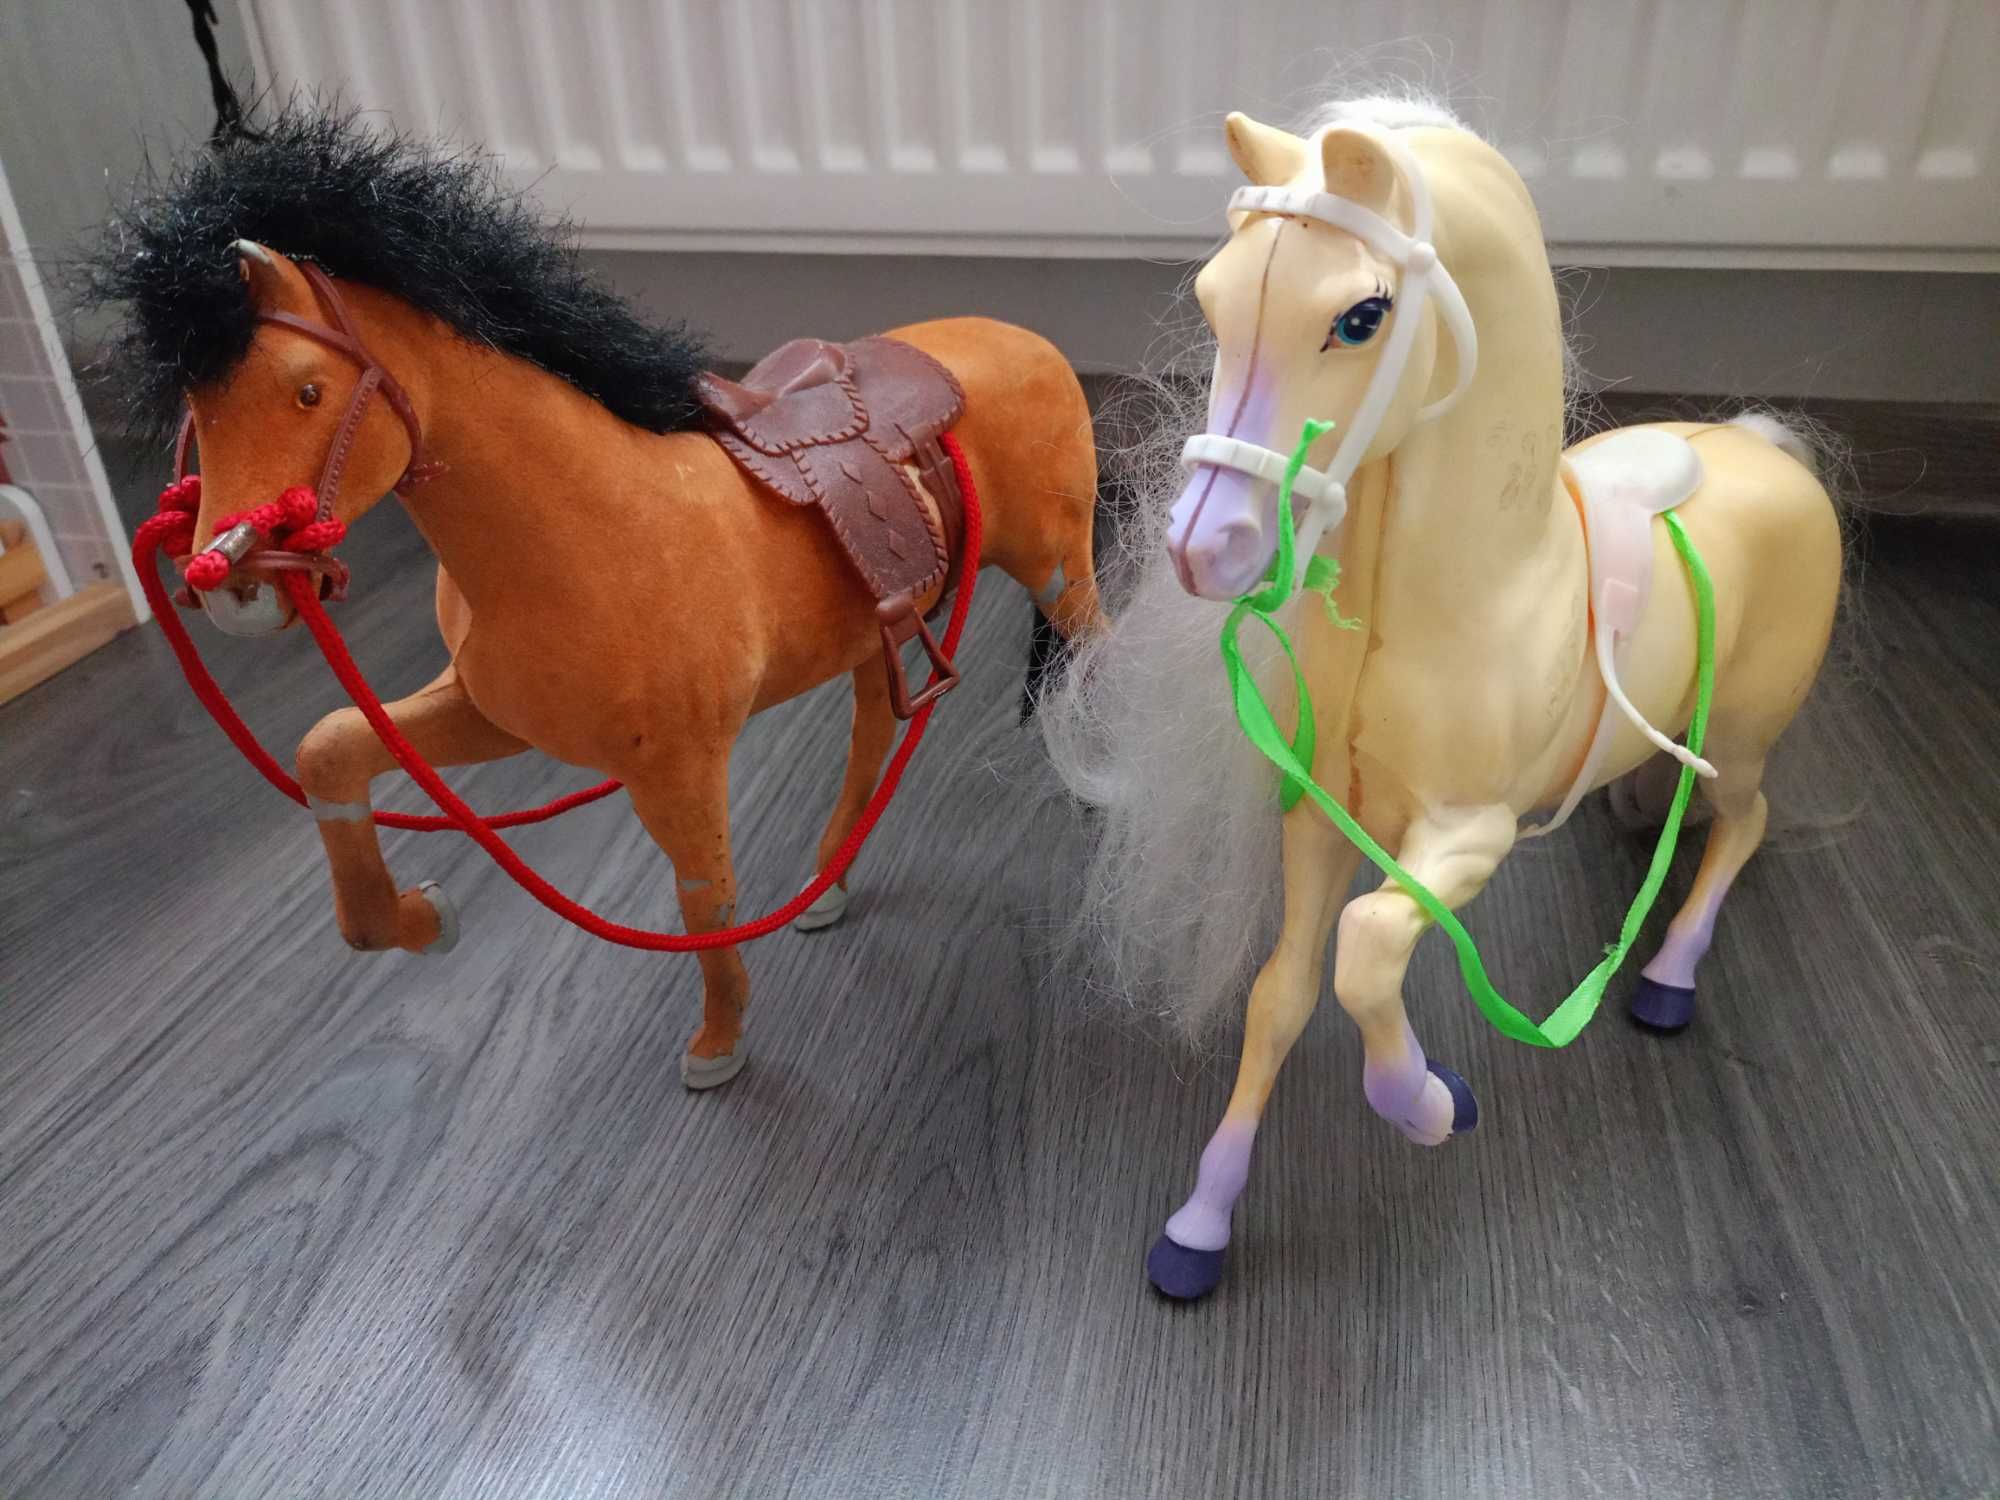 Кінь дитяча іграшка, кінь для Барбі, 2 шт. 30*25 см. Ціна за все.